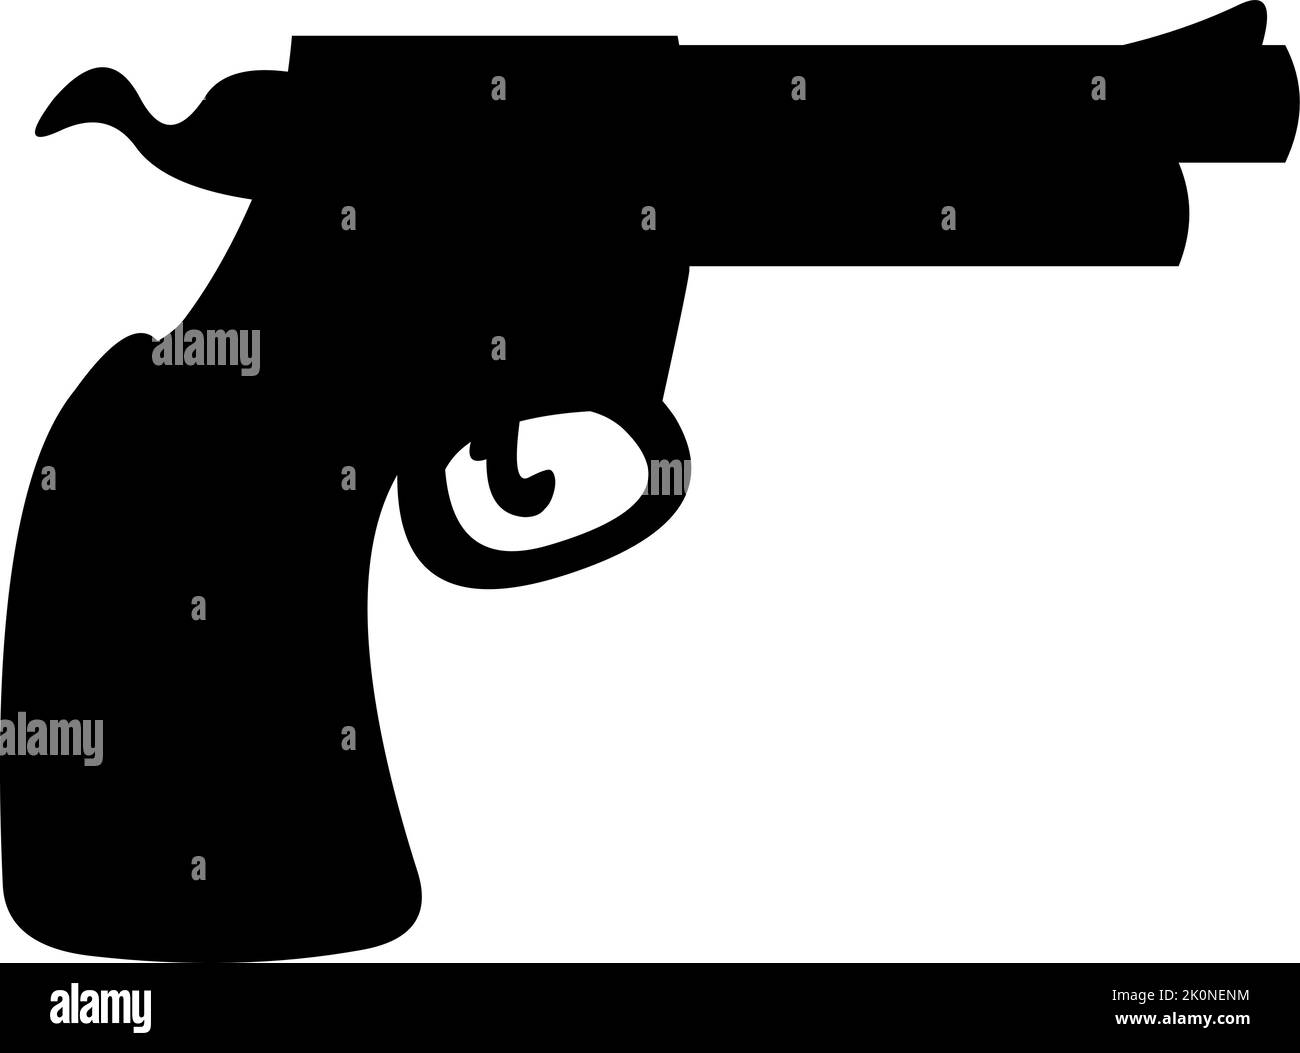 Vektor-Illustration der Ikone schwarze Farbe Silhouette eines klassischen wilden Westen Sheriff oder Cowboy Pistole Stock Vektor